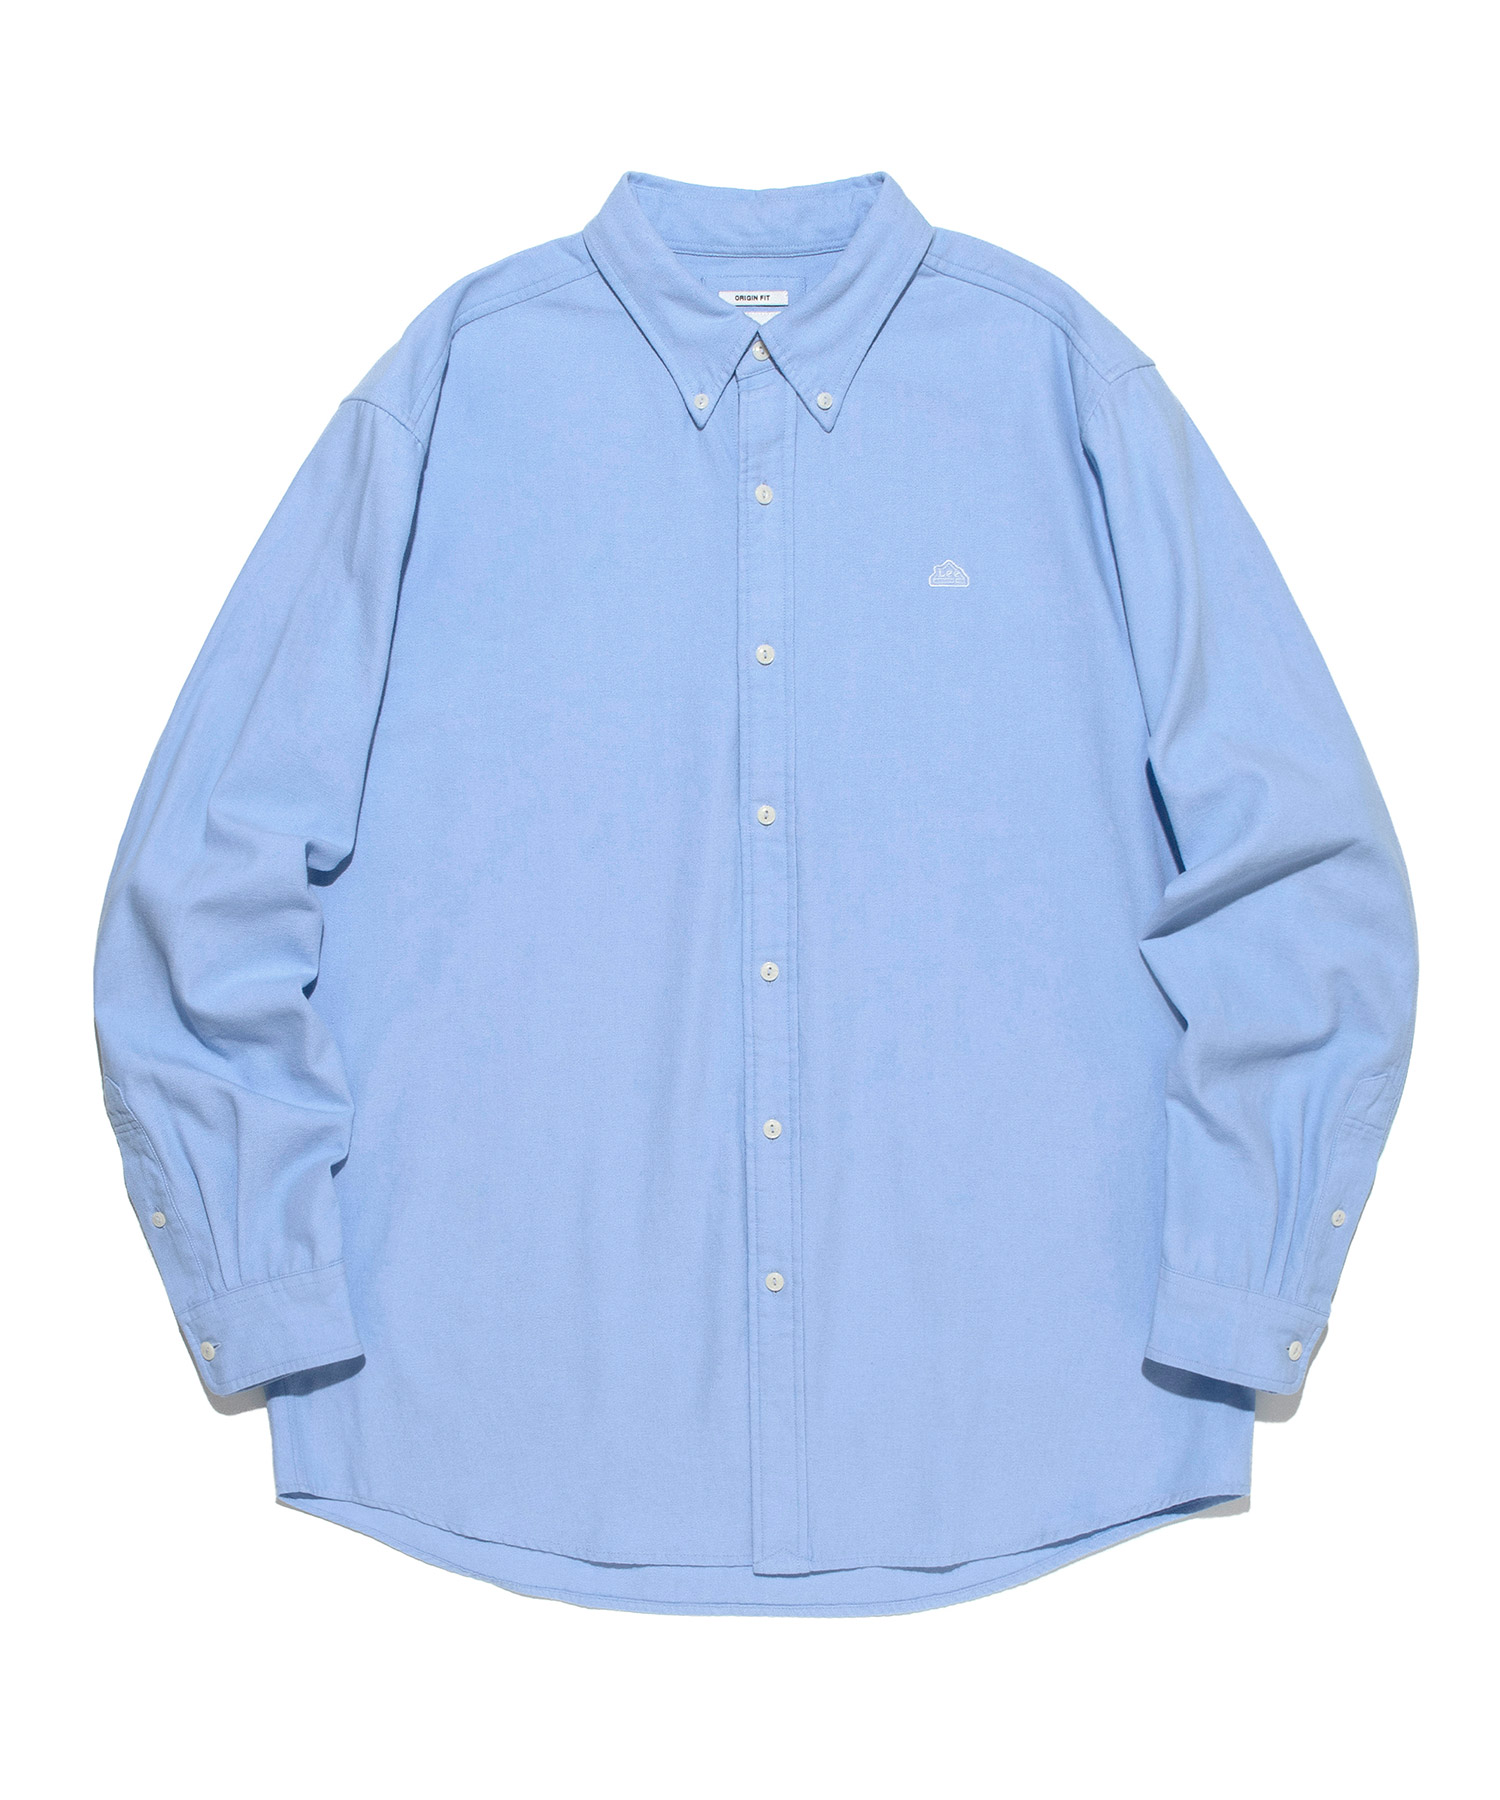 옥스포드 오리진핏 셔츠 라이트 블루